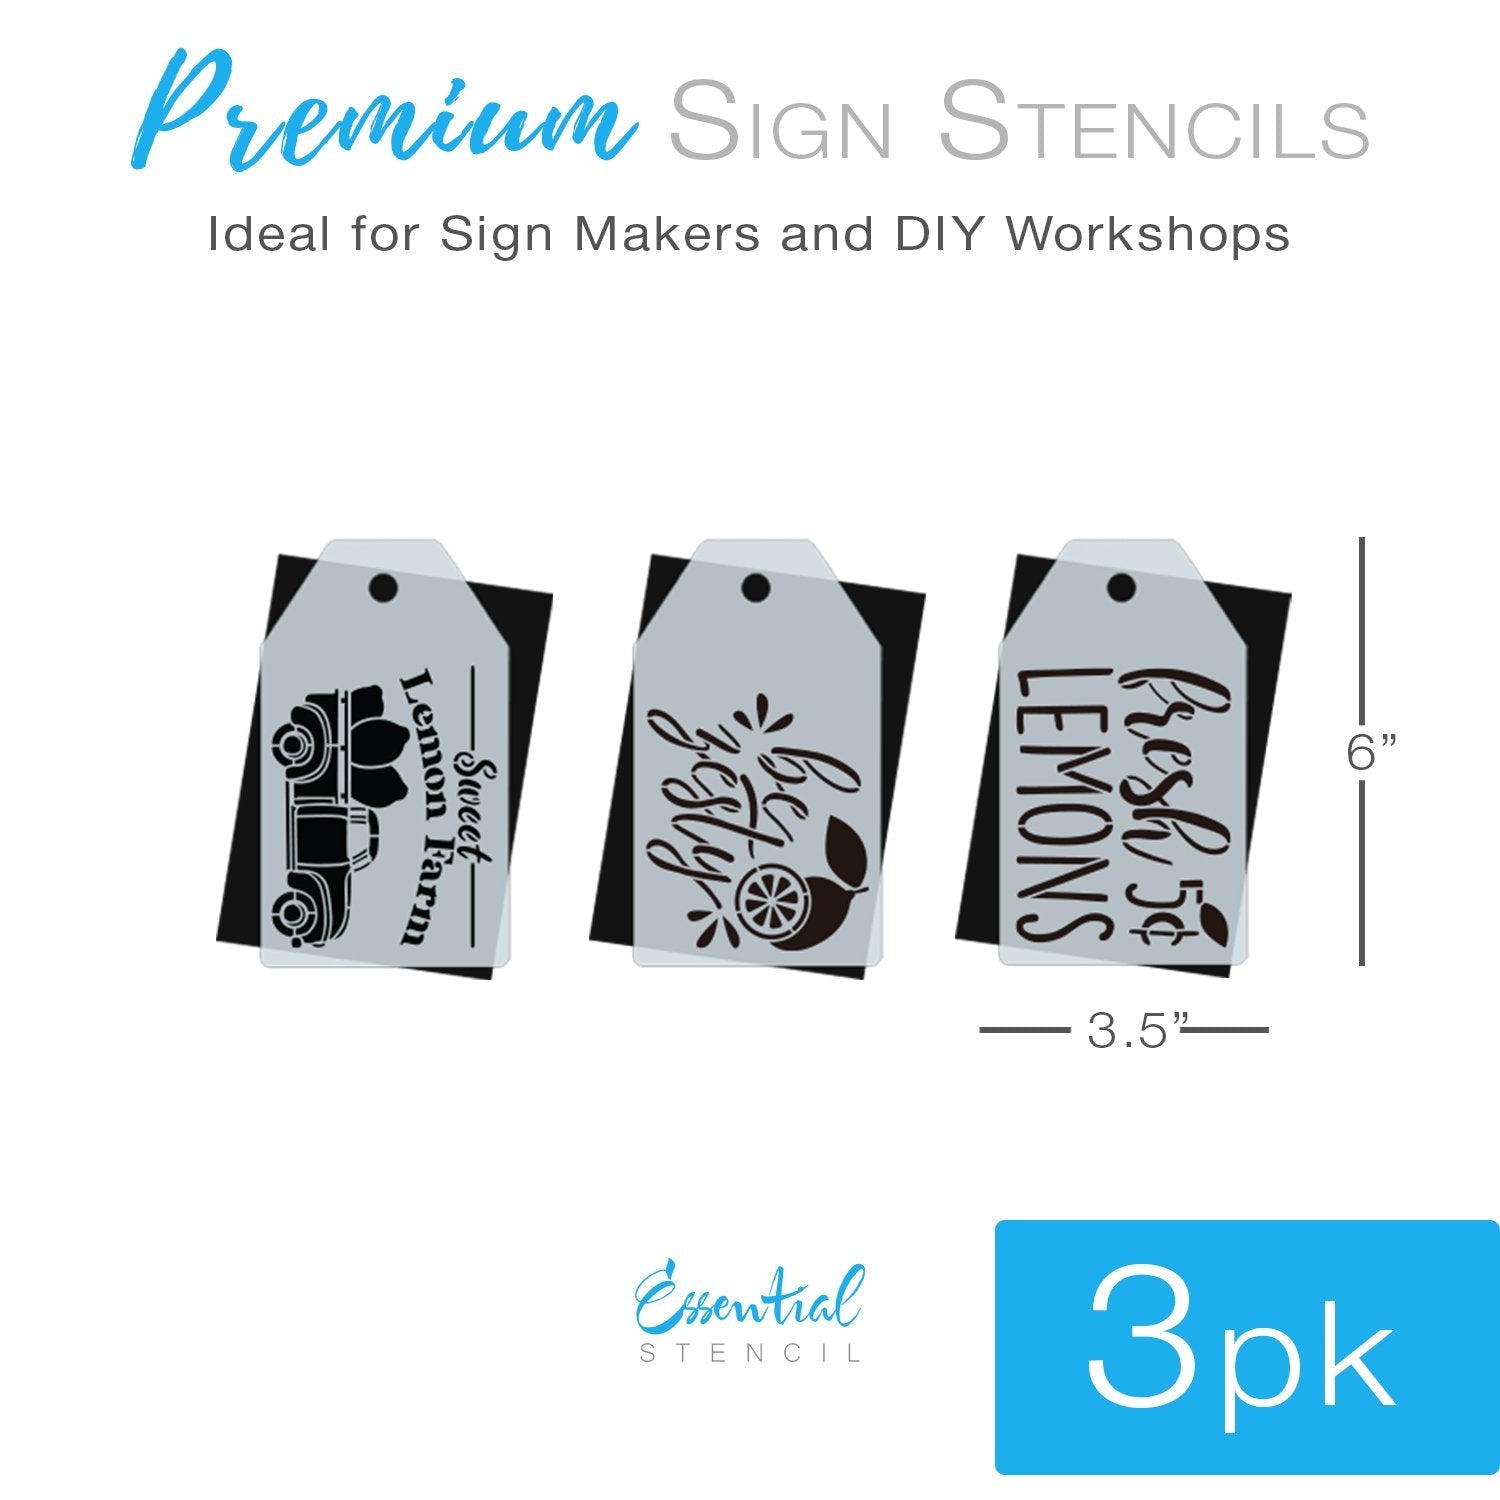 Stencil MiNiS - Mini Stars Stencil - Reusable Stencils for Crafts